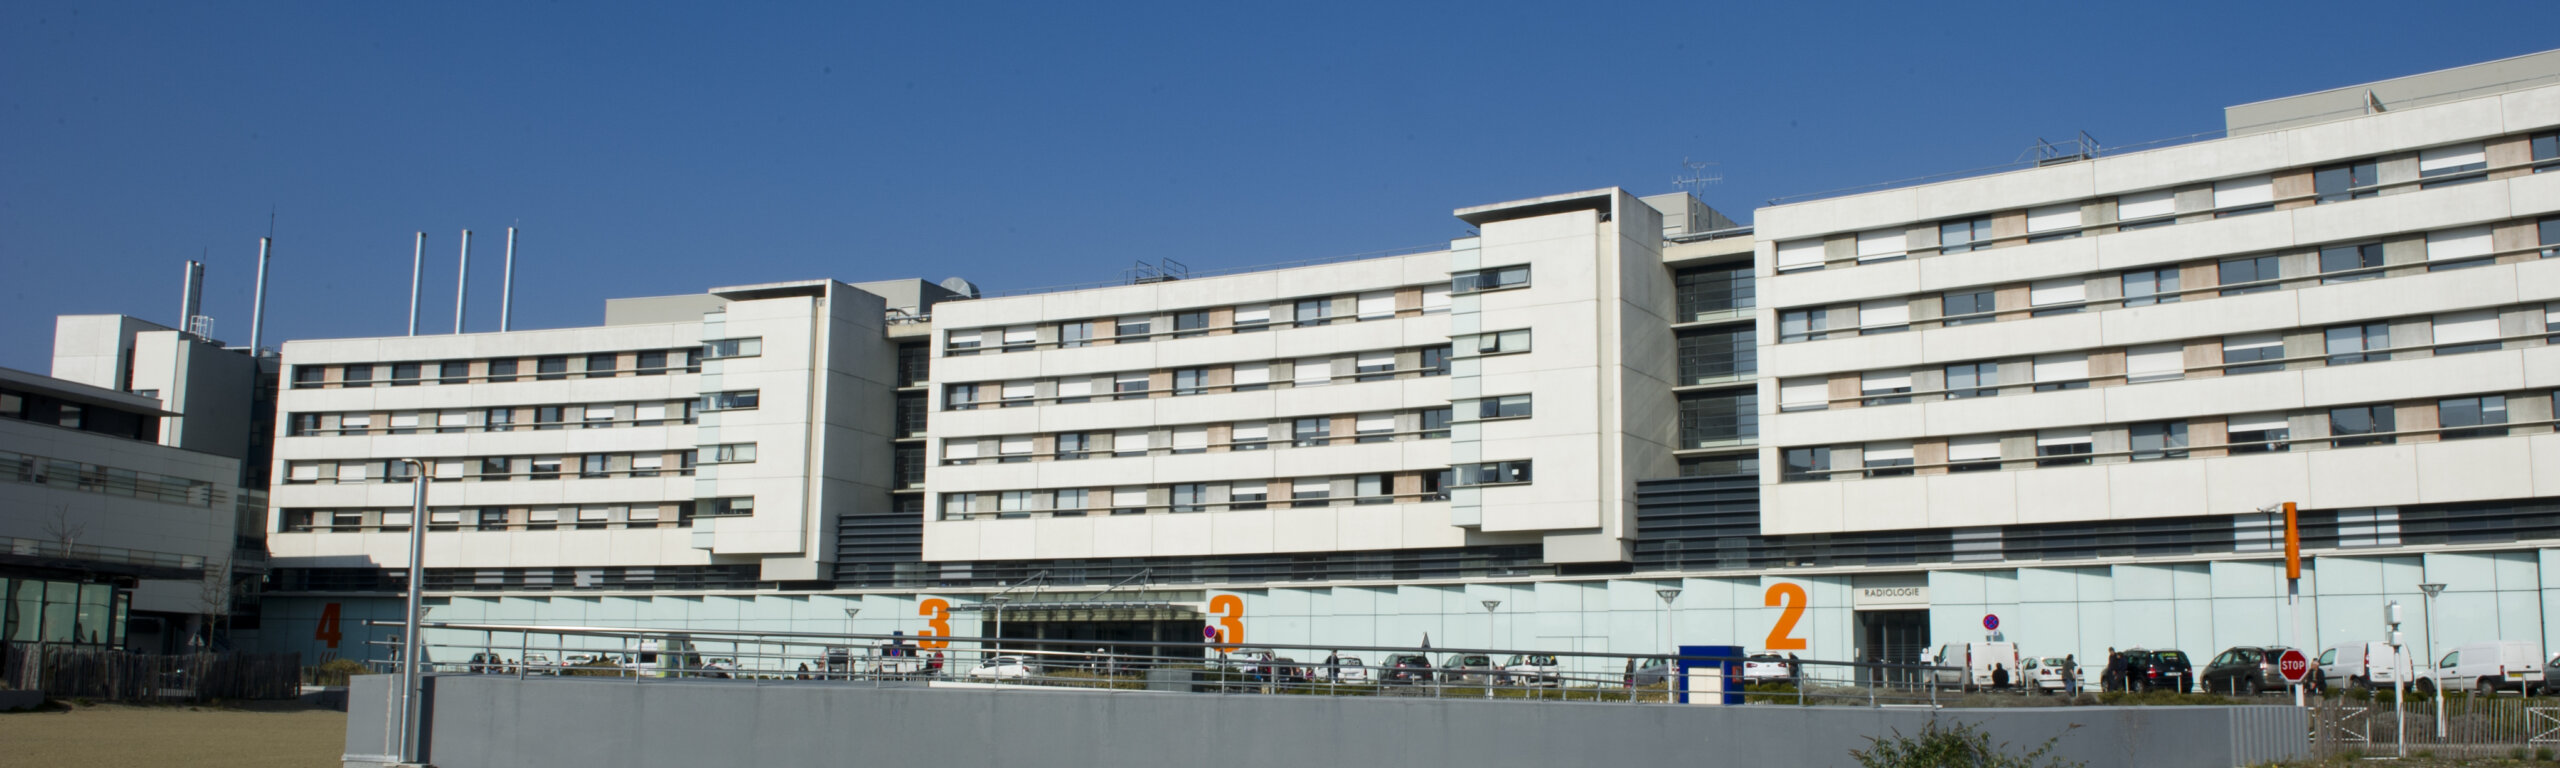 L'Hôpital Privé du Confluent (Nantes) ouvre un Hôpital de Jour dédié aux soins de support oncologiques qui aident à diminuer les effets secondaires des traitements, améliorant ainsi le vécu des patients.